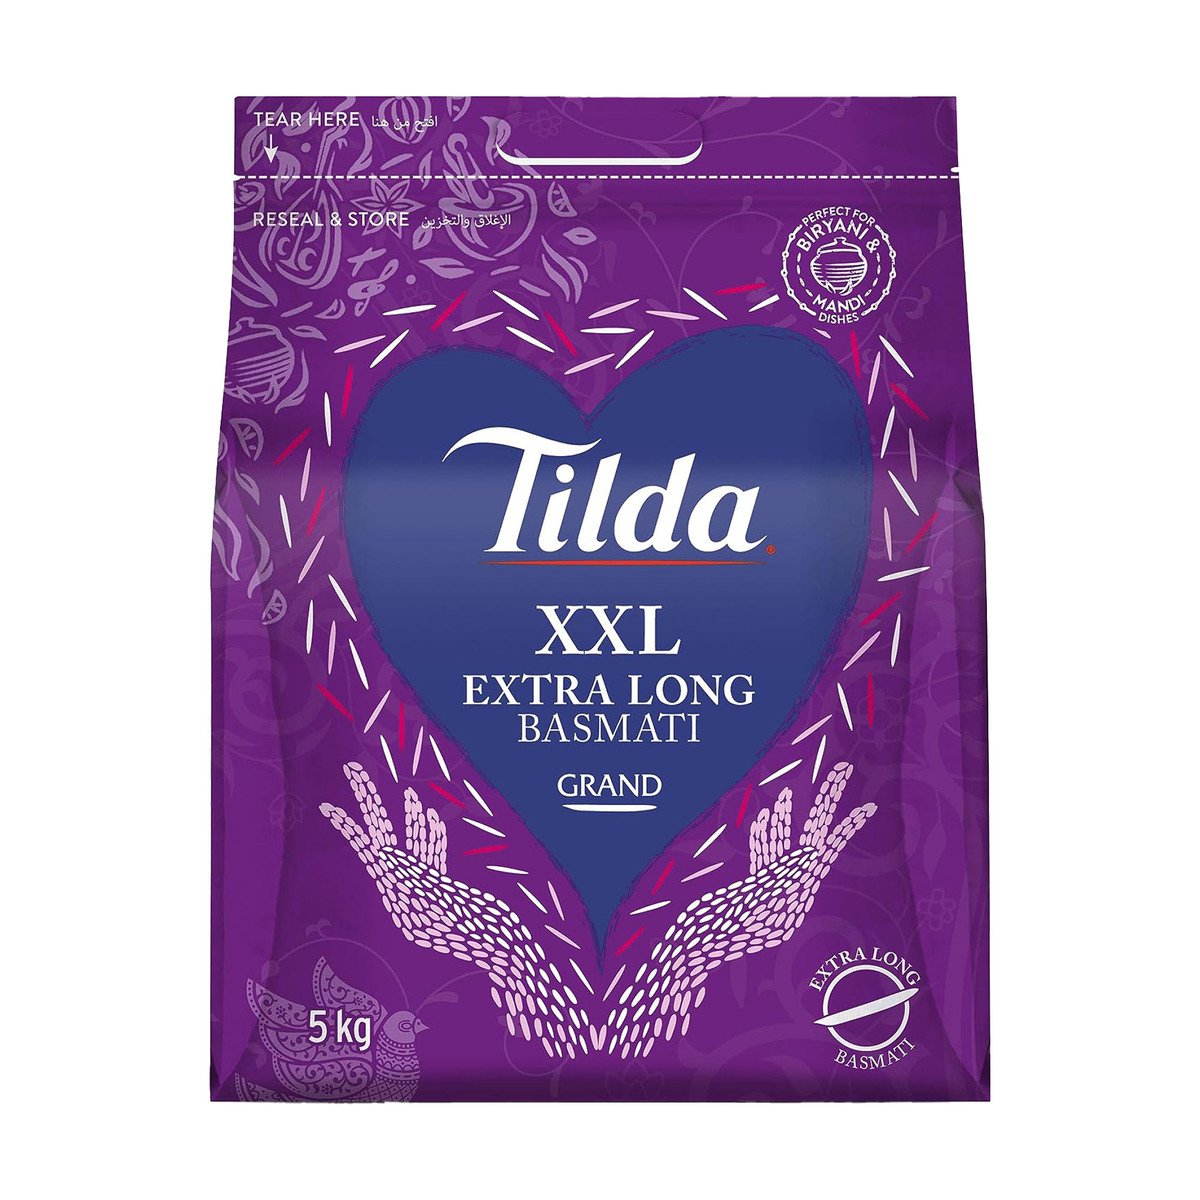 Buy Tilda Grand XXL Extra Long Basmati Rice 5 kg Online at Best Price | Basmati | Lulu UAE in UAE